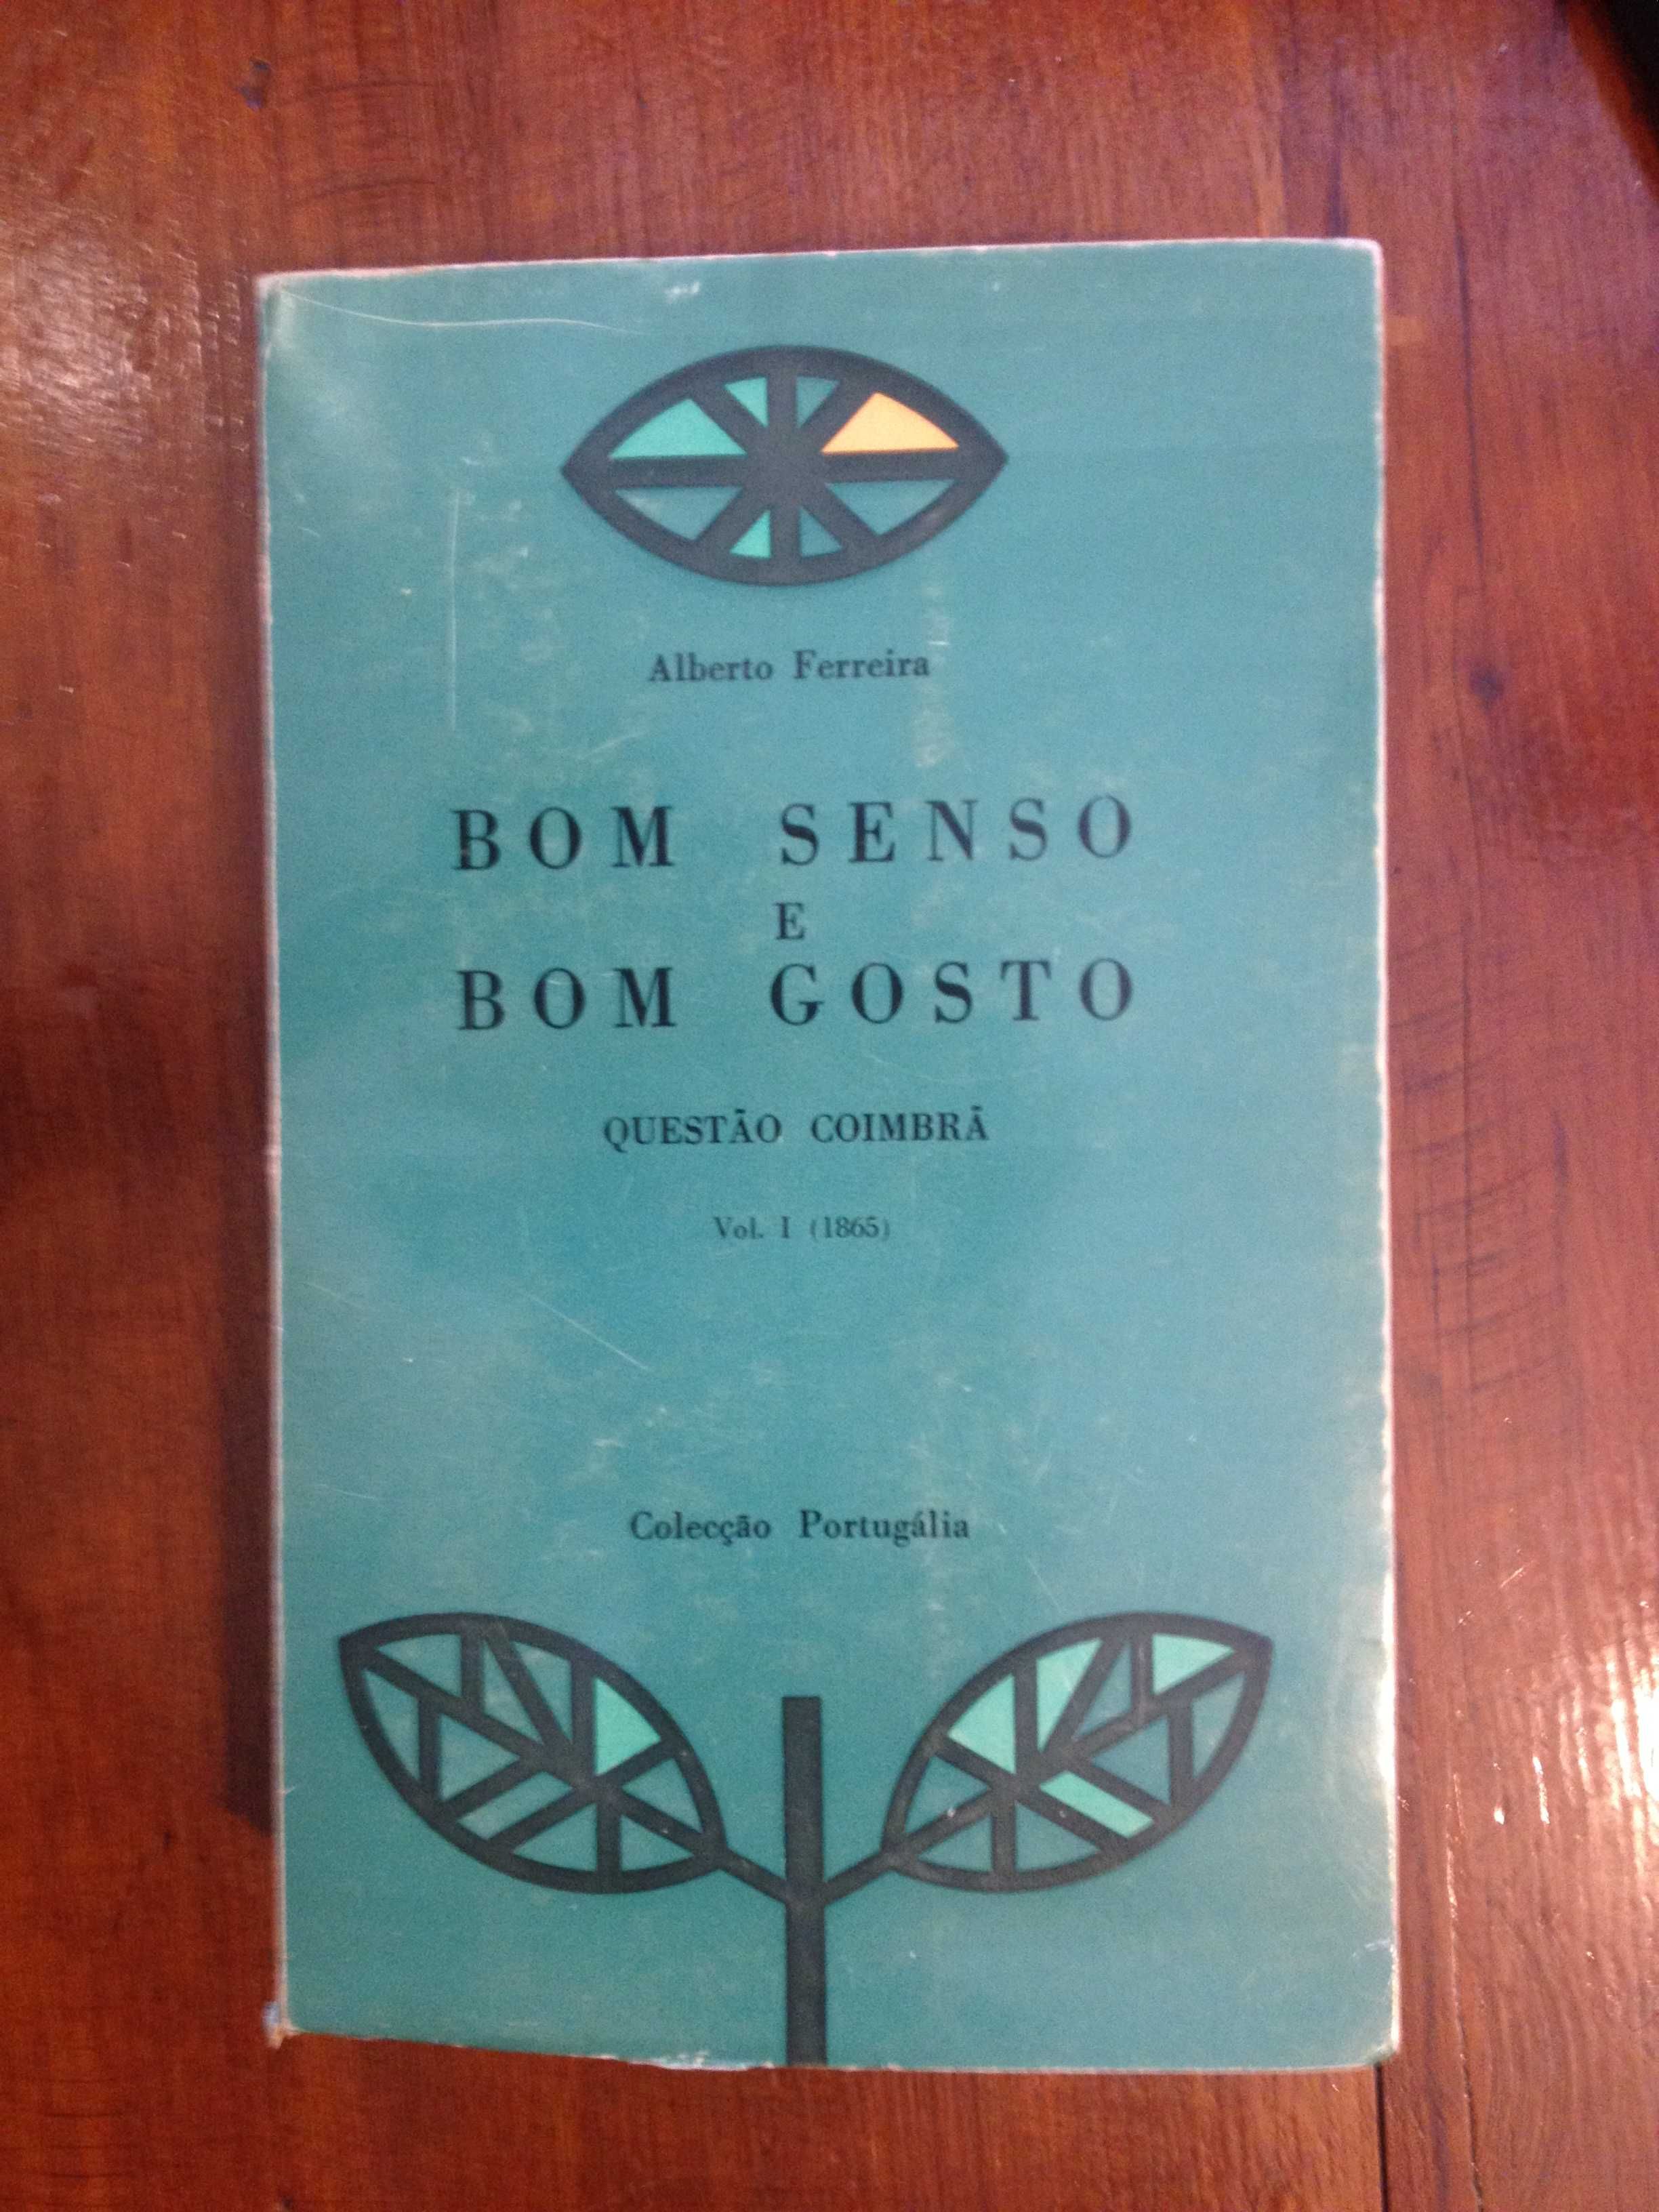 Alberto Ferreira - Bom senso e bom gosto Vol.1